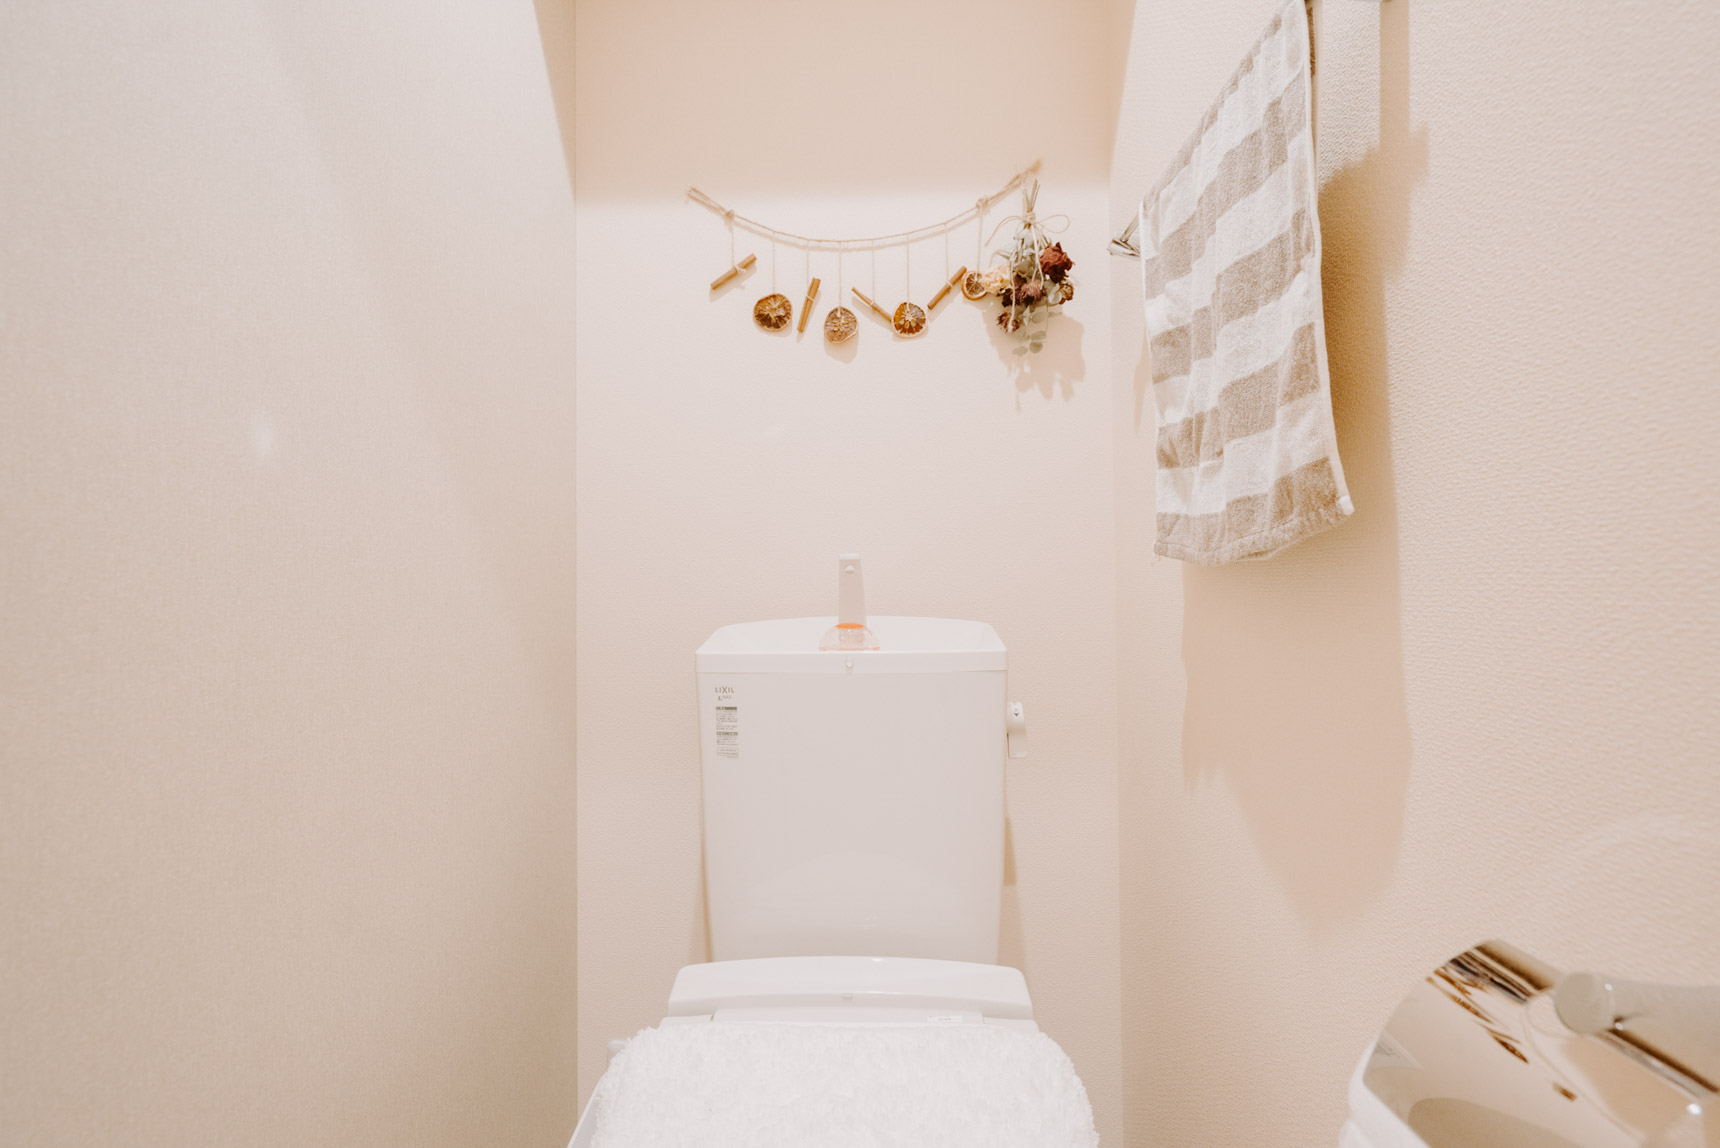 トイレなど、小さなスペースには、麻紐と組み合わせた小さな飾りを。